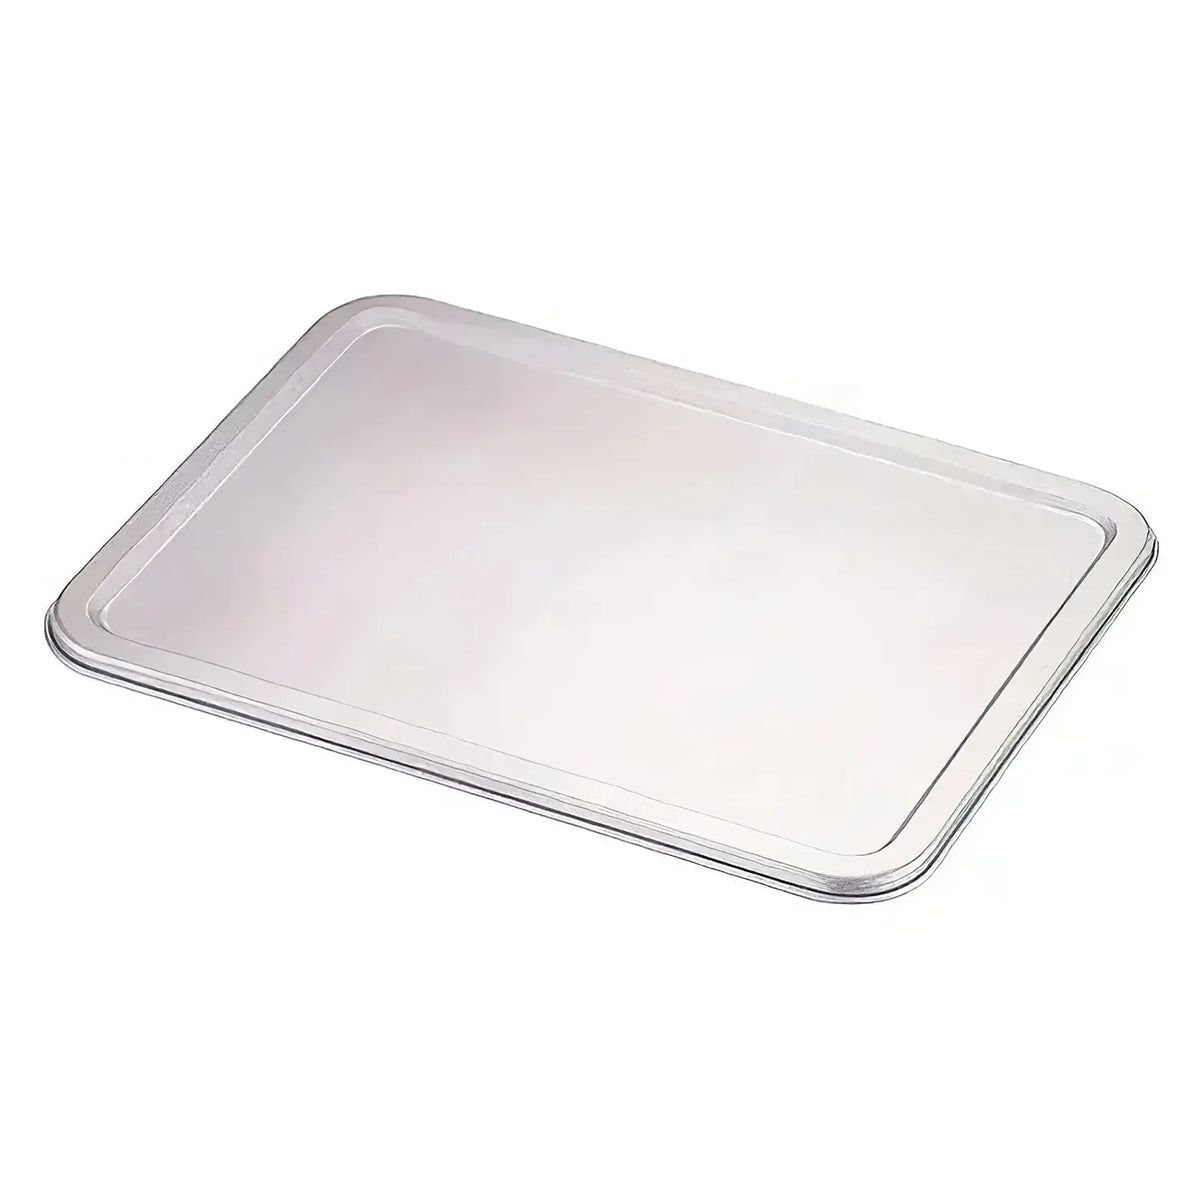 IKD Stainless Steel Antibacterial Stackable Tray